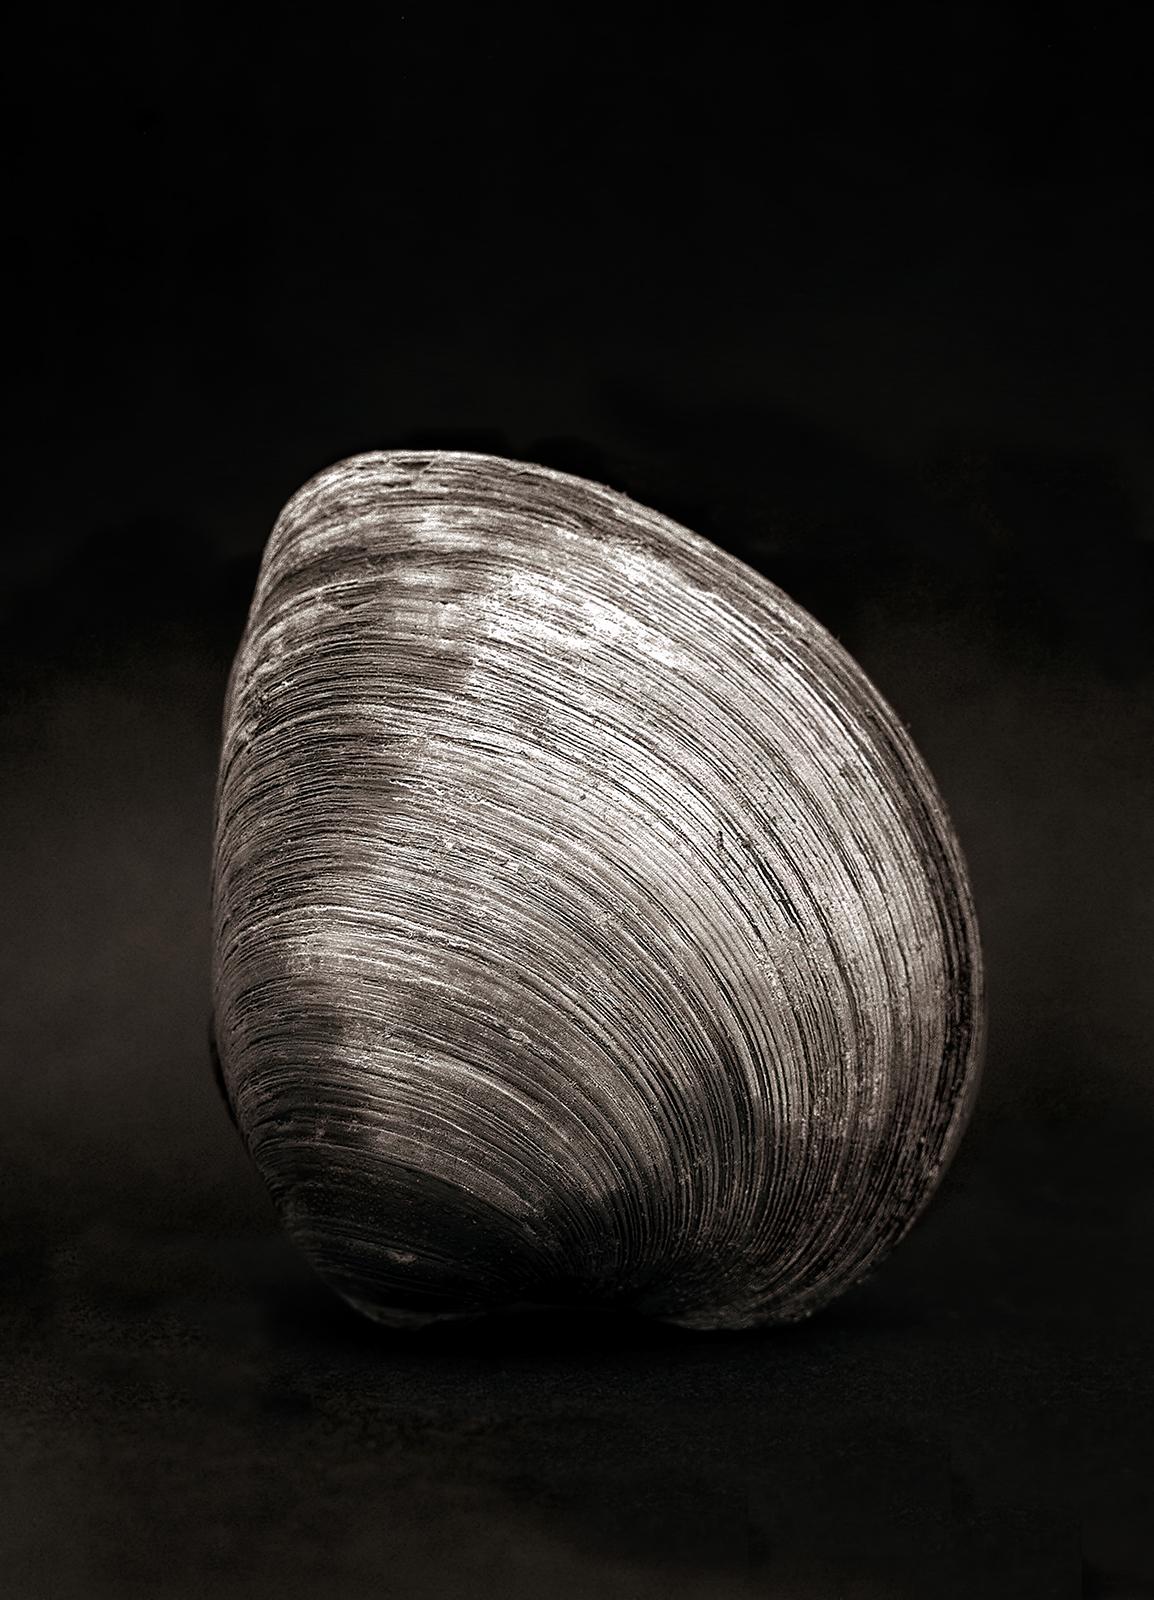 Ian Sanderson Black and White Photograph – Clam- Signierter Naturdruck in limitierter Auflage, Schwarz-Weiß-Foto, Stillife